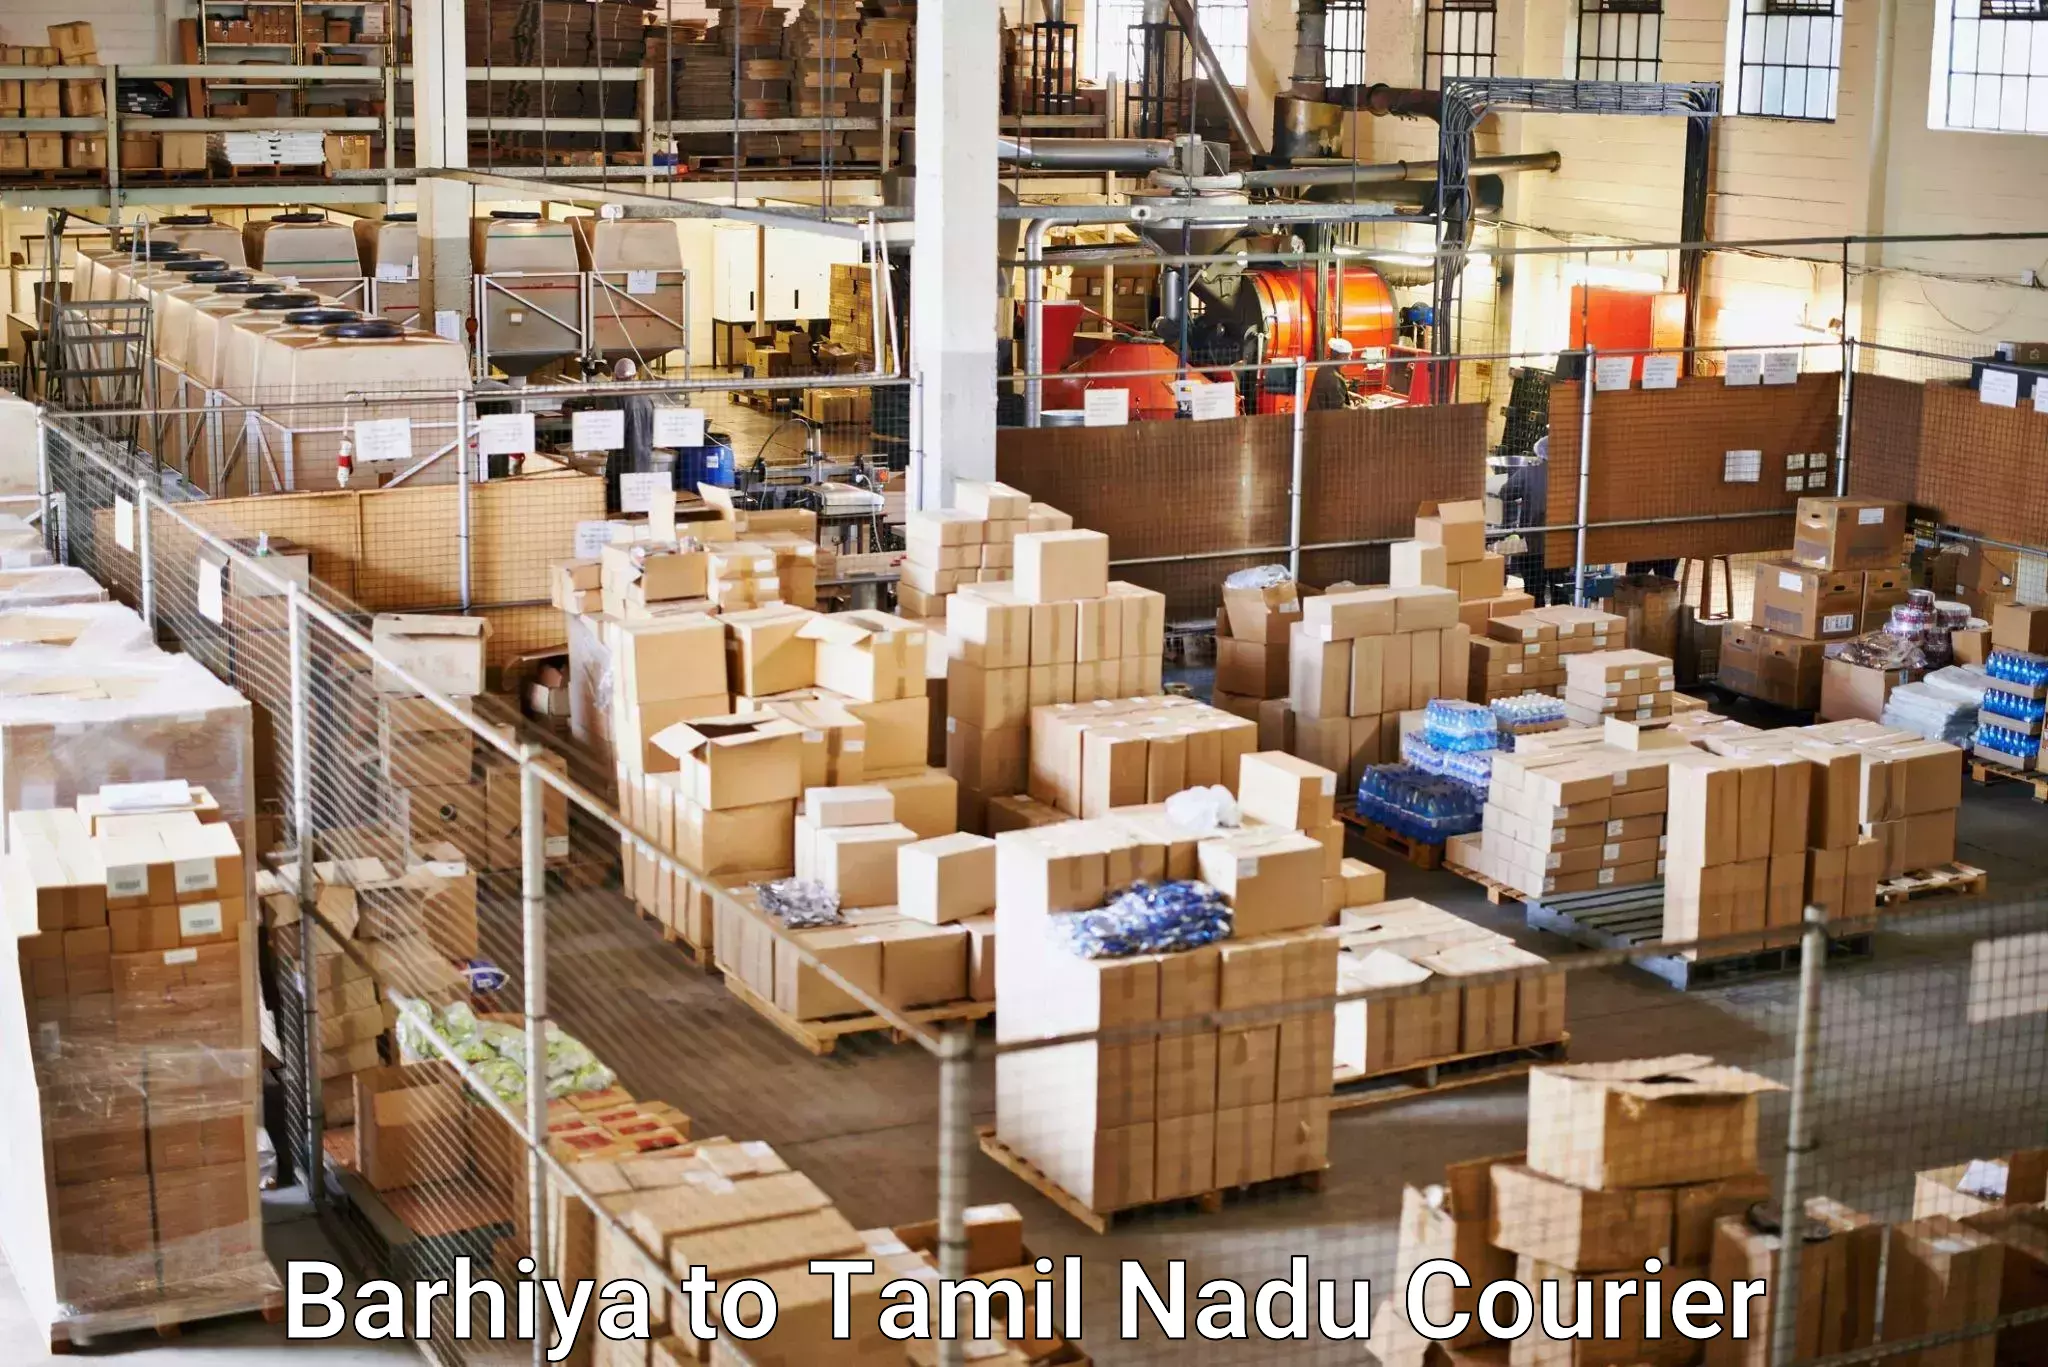 Reliable logistics providers Barhiya to Tirupur